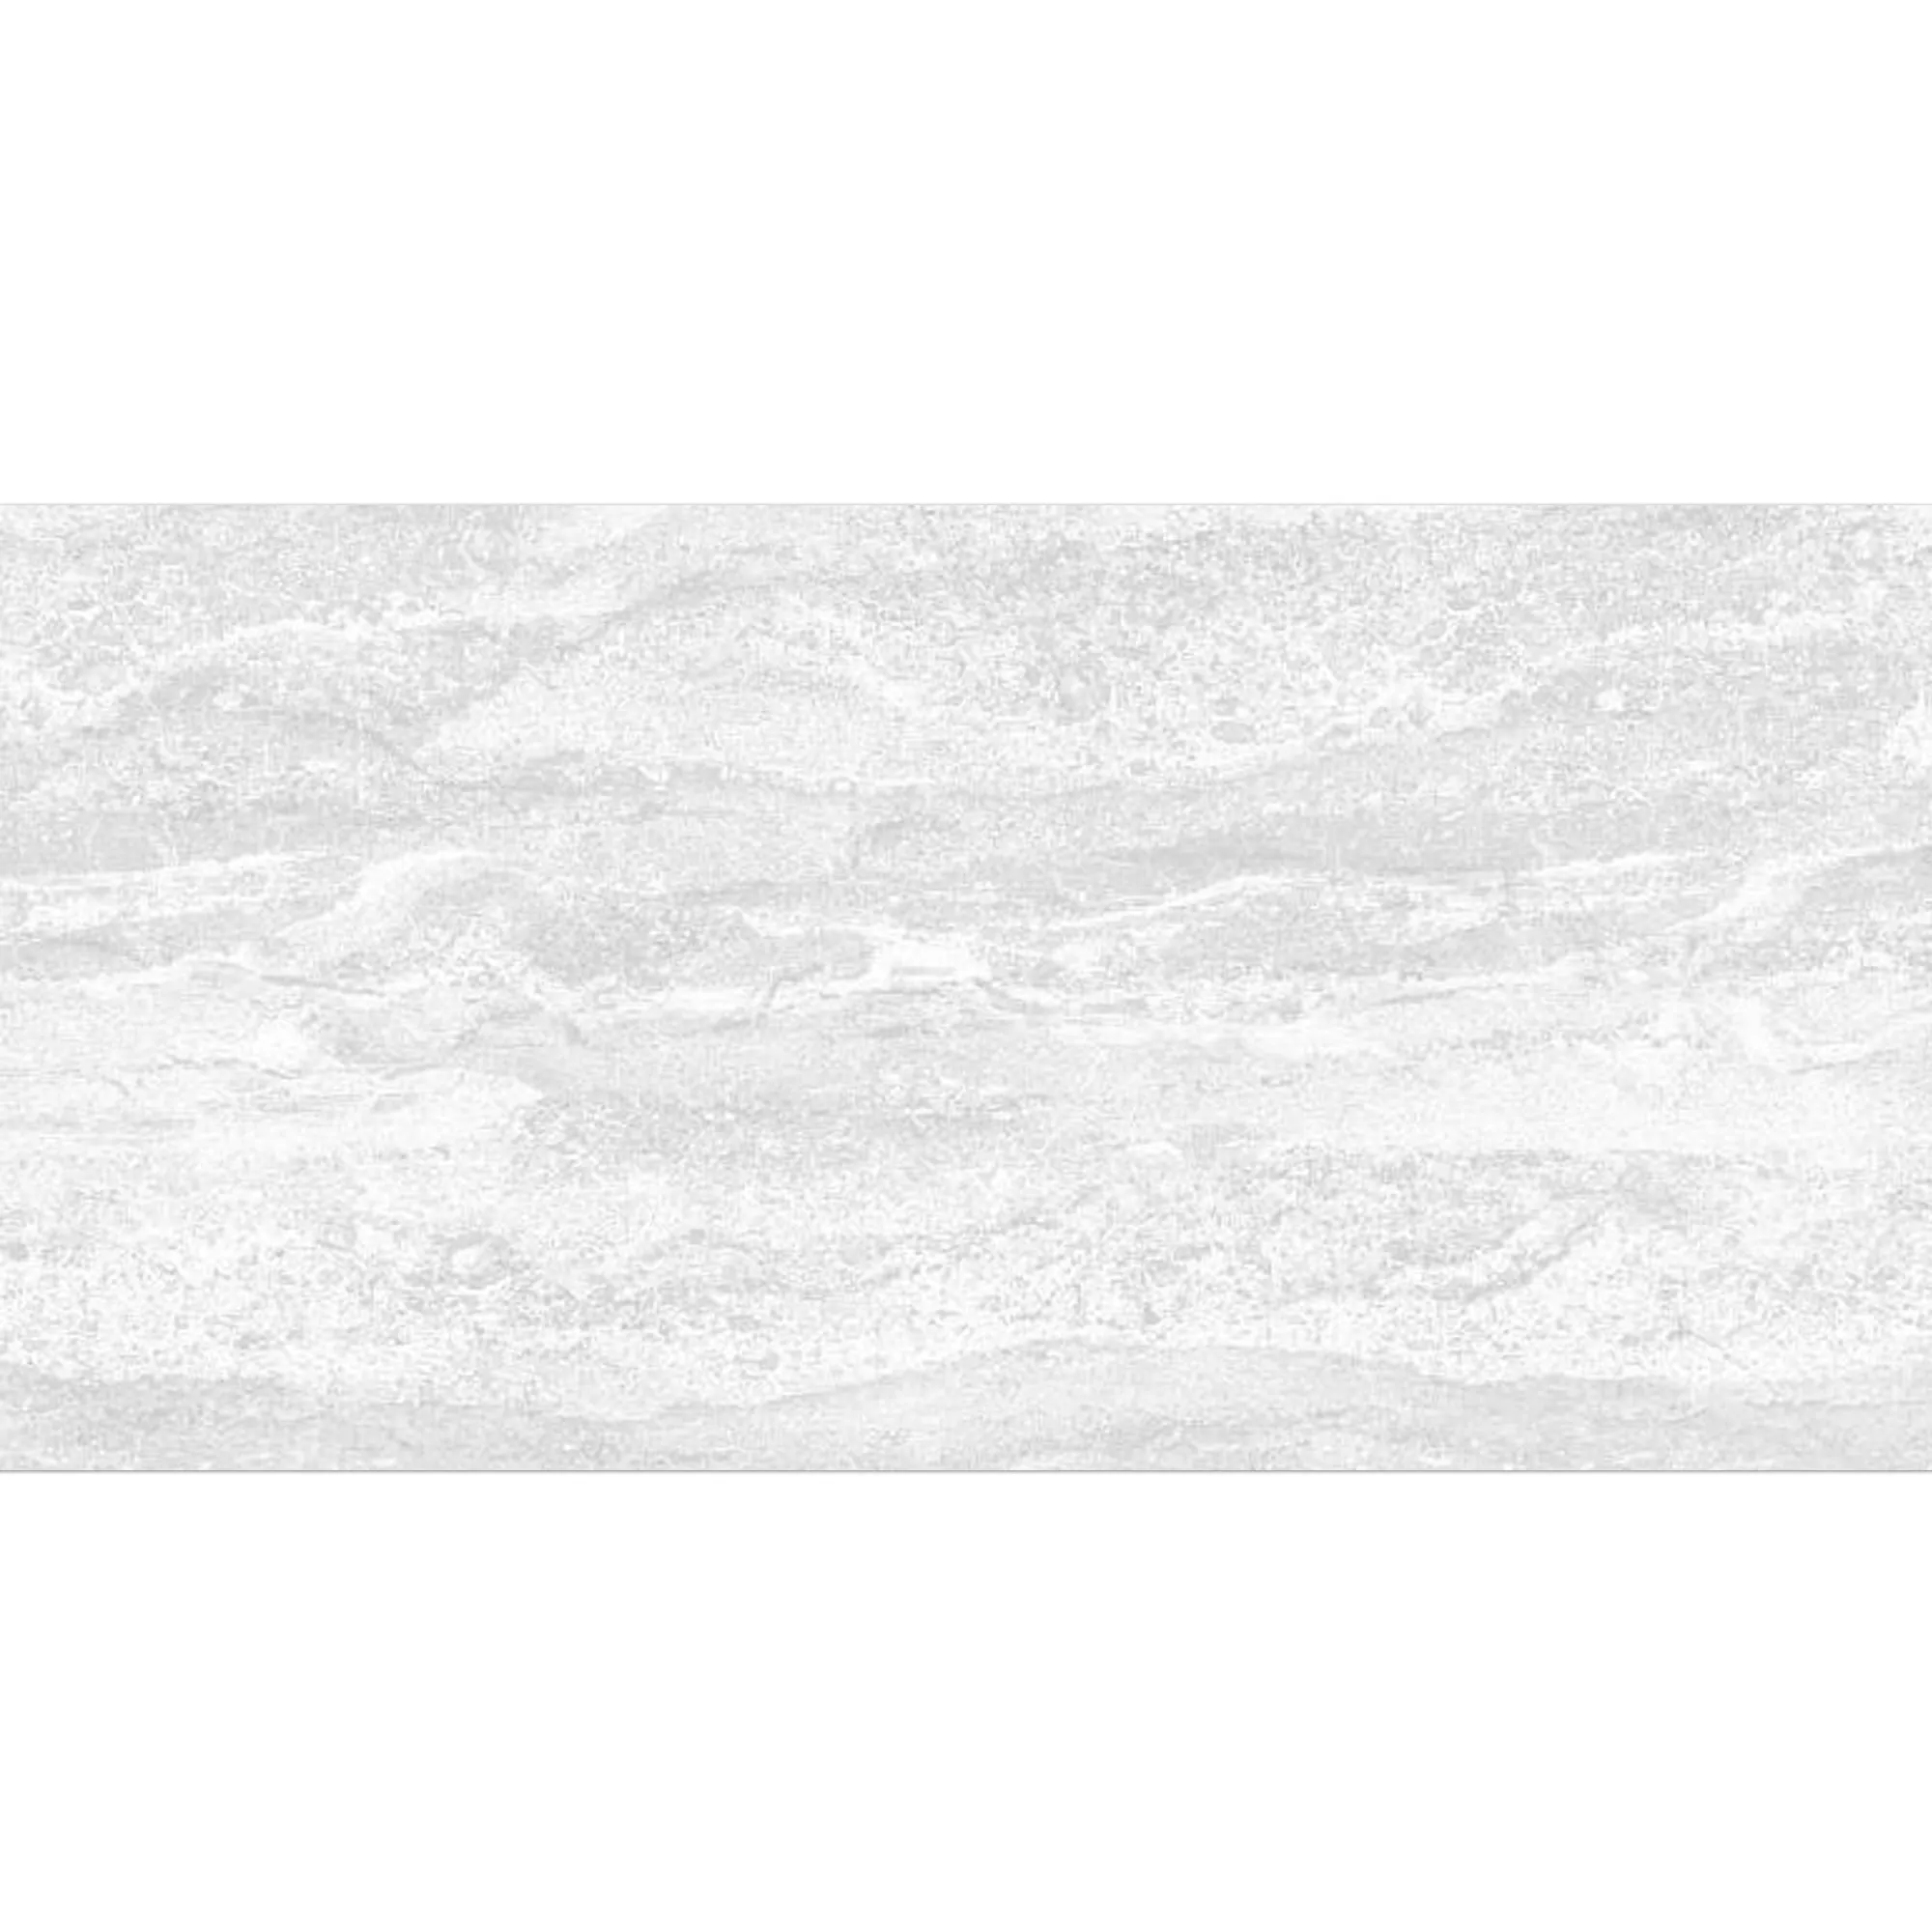 Płytki Ścienne Bellinzona Biały Strukturalny 30x60cm